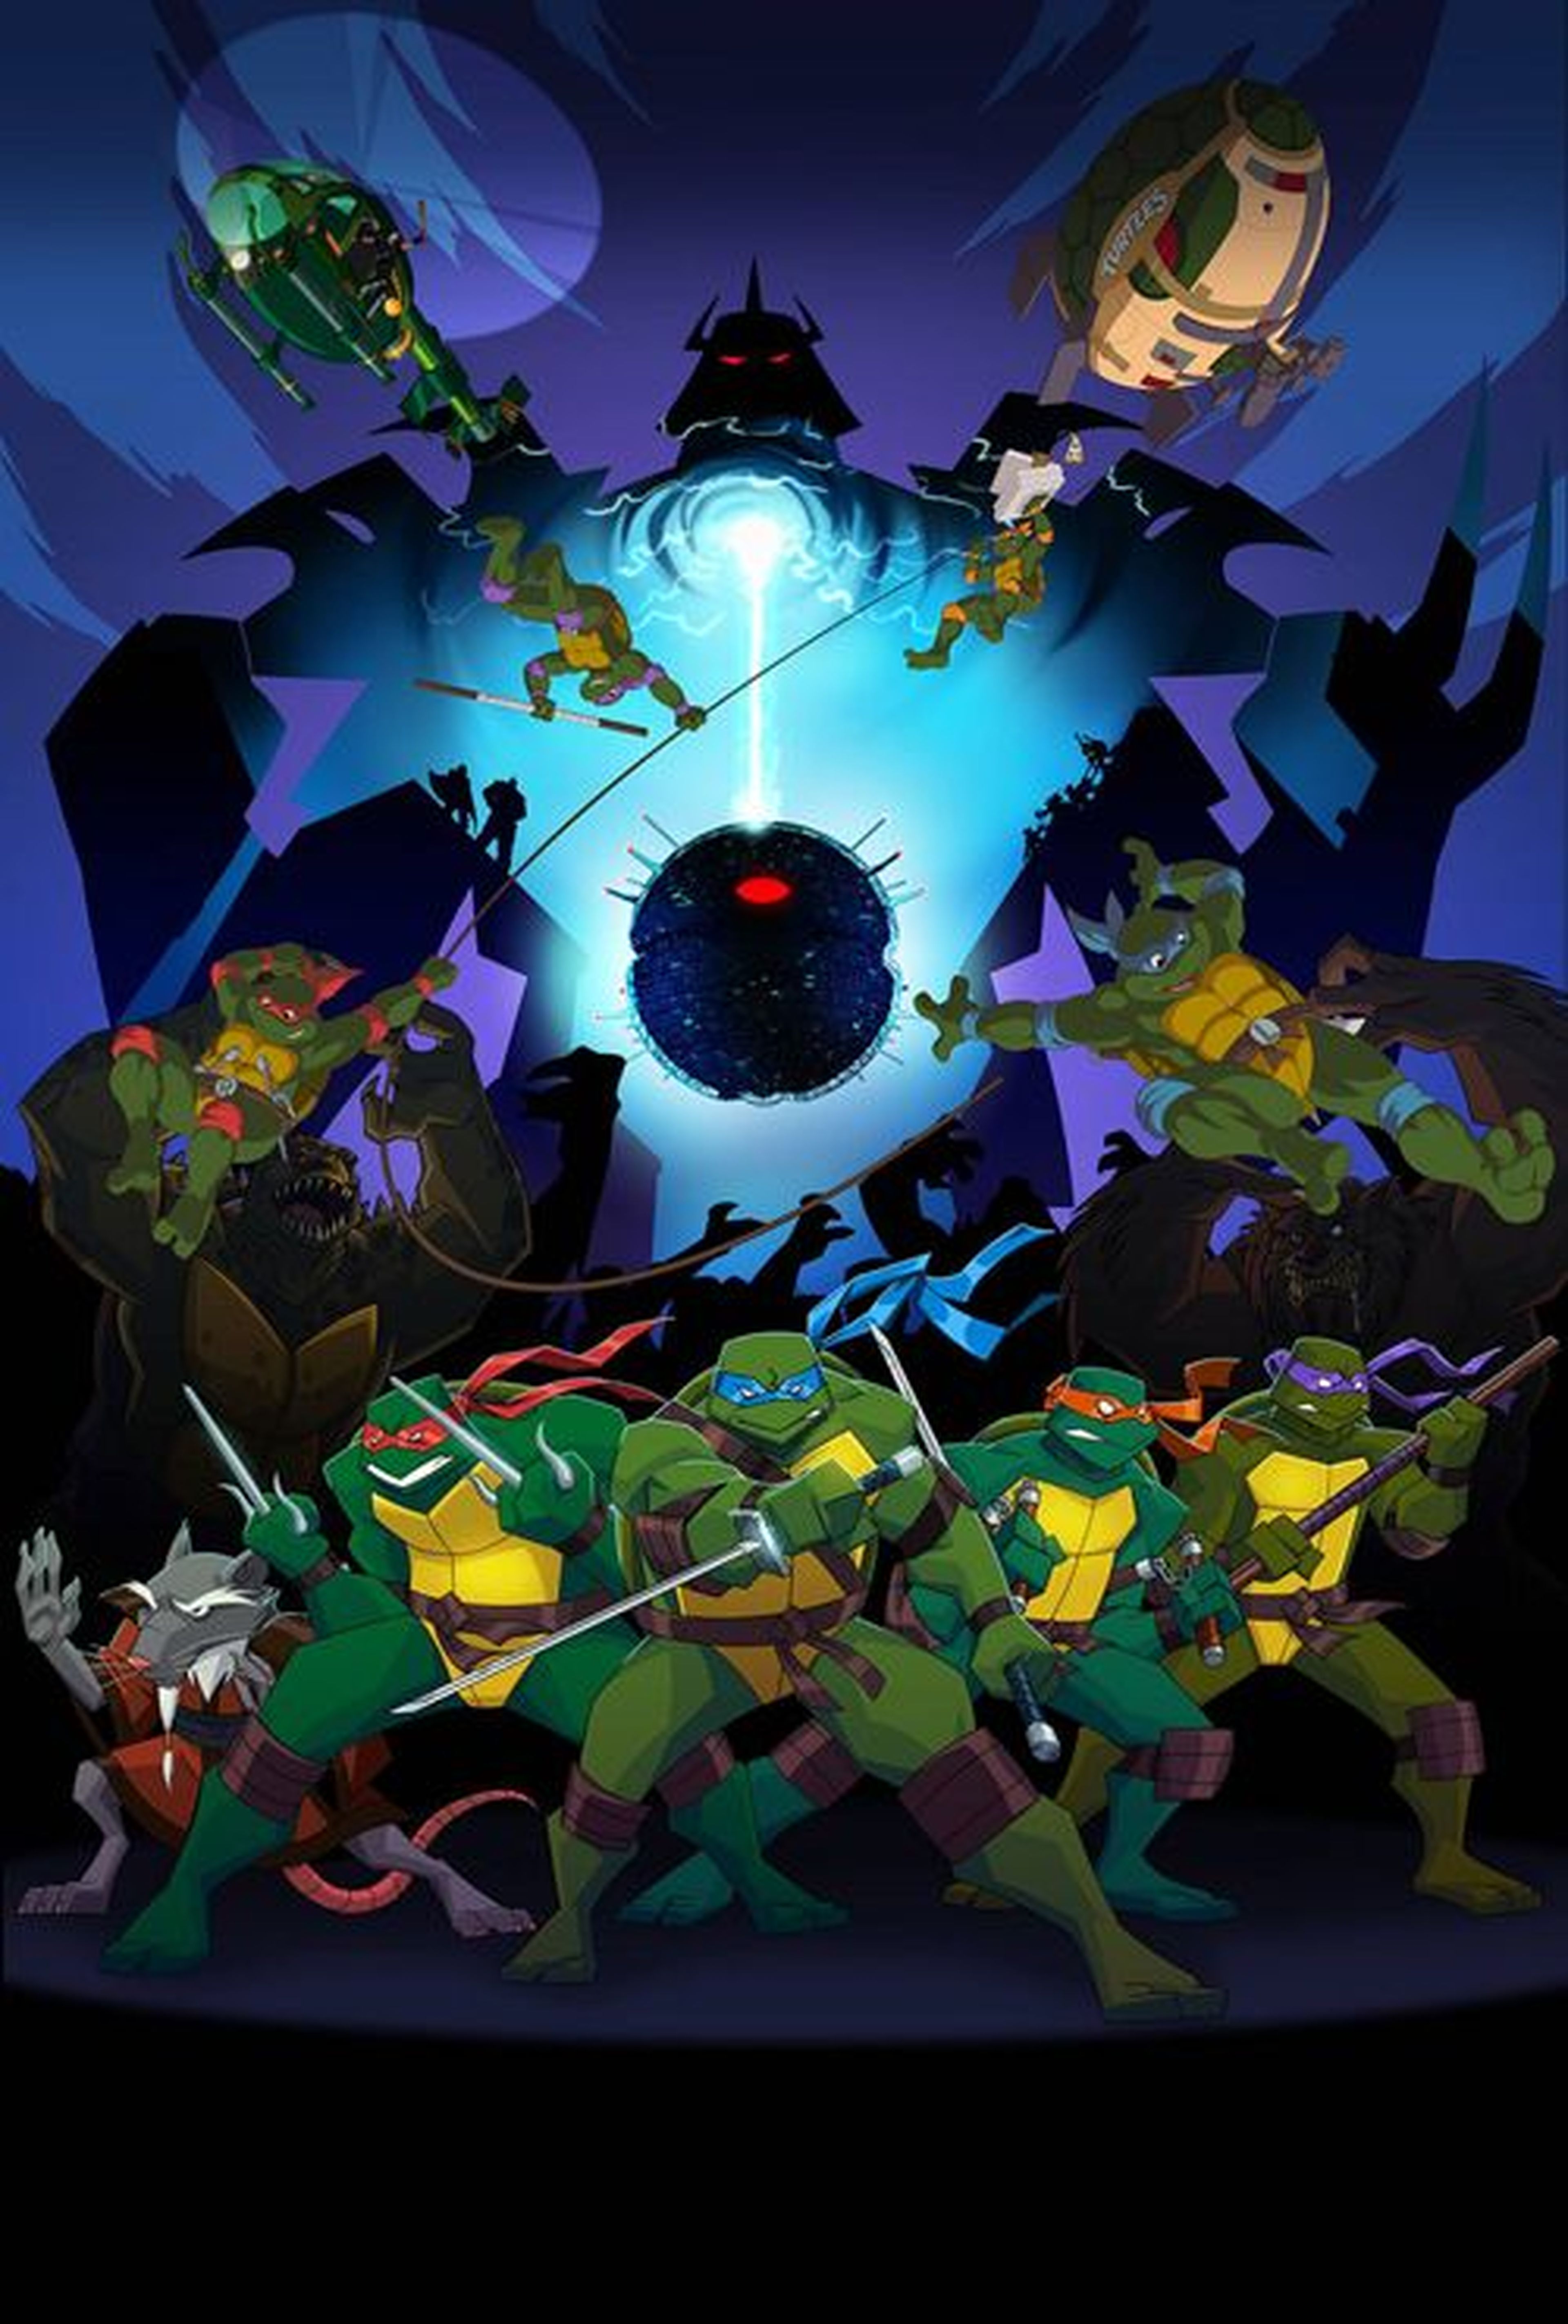 Tortugas Ninja - Recordamos todas las series de televisión